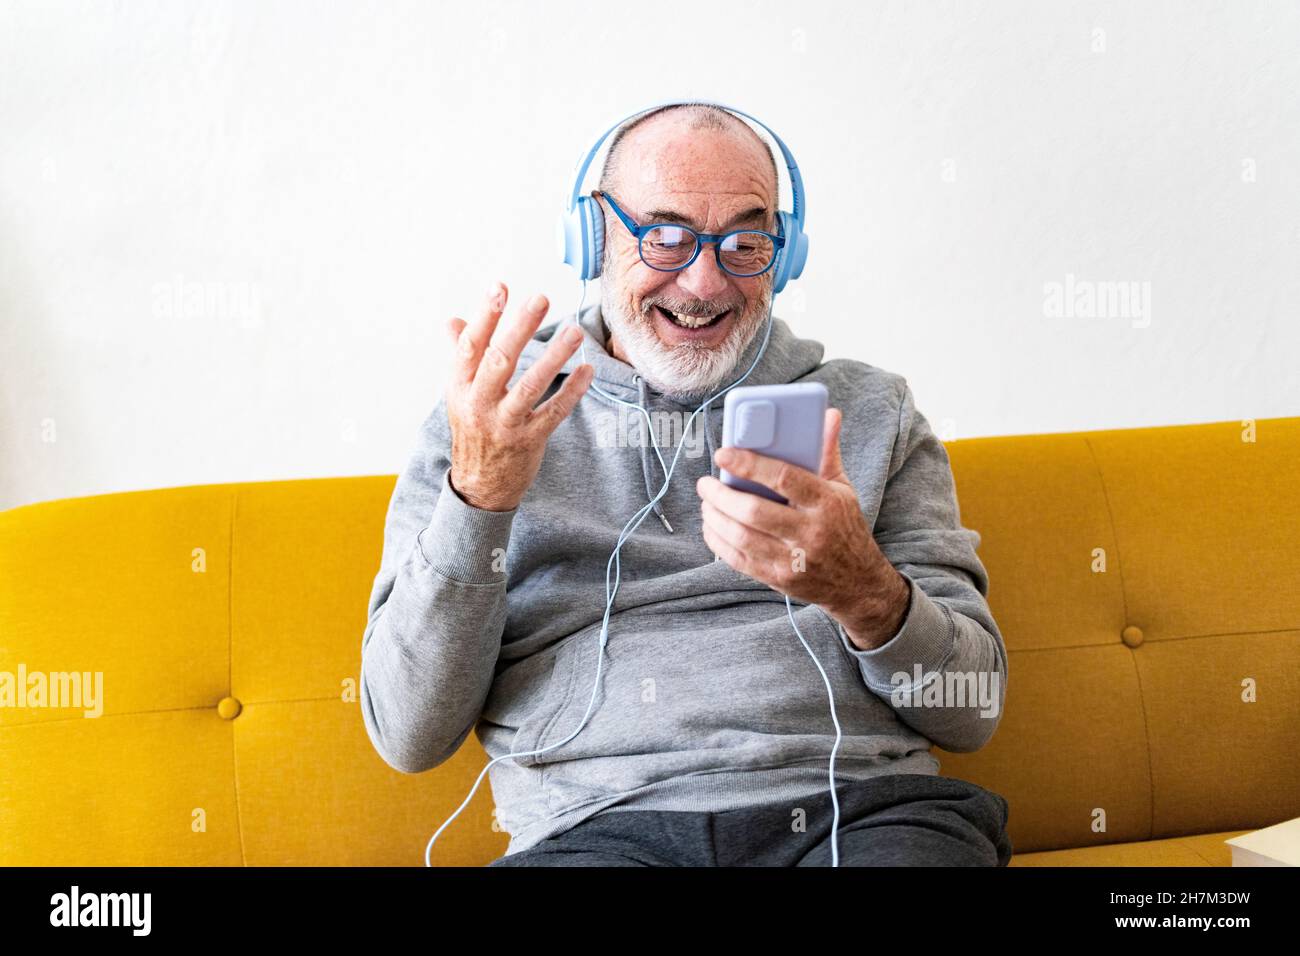 Smiling senior man drinking coffee on sofa Stock Photo